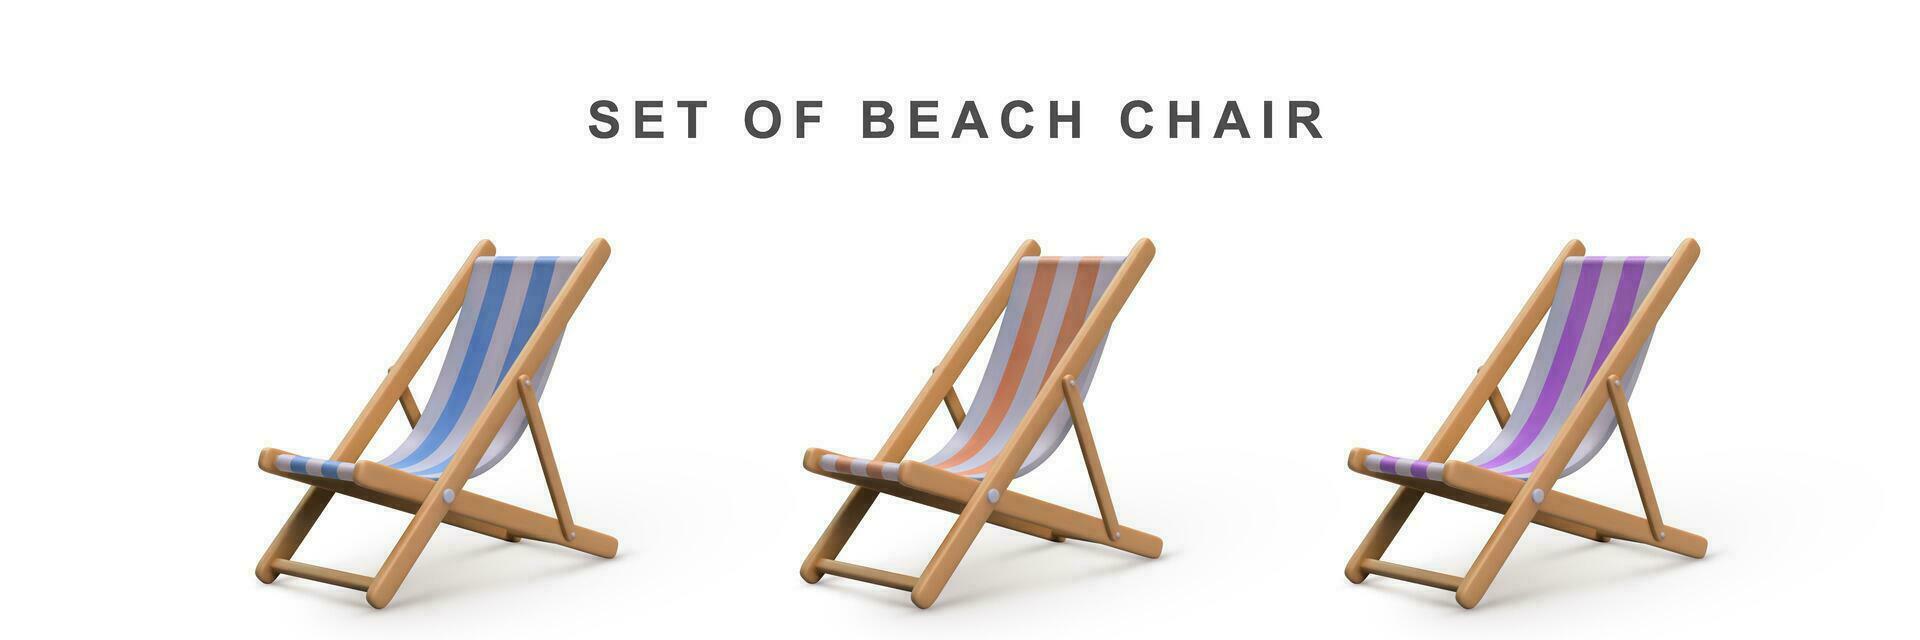 3d realistisch reeks strand stoel. vector illustratie.